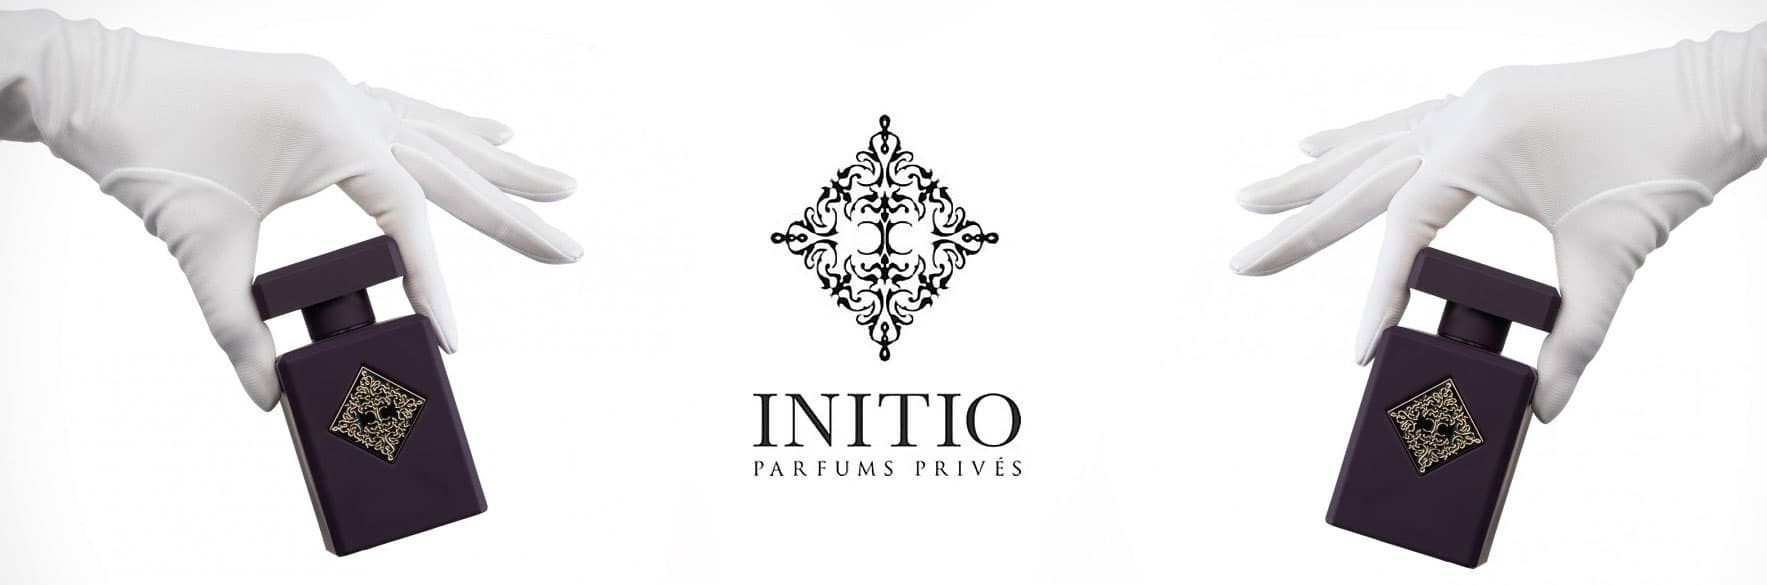 محصولات اینیشیو INITIO فرانسه